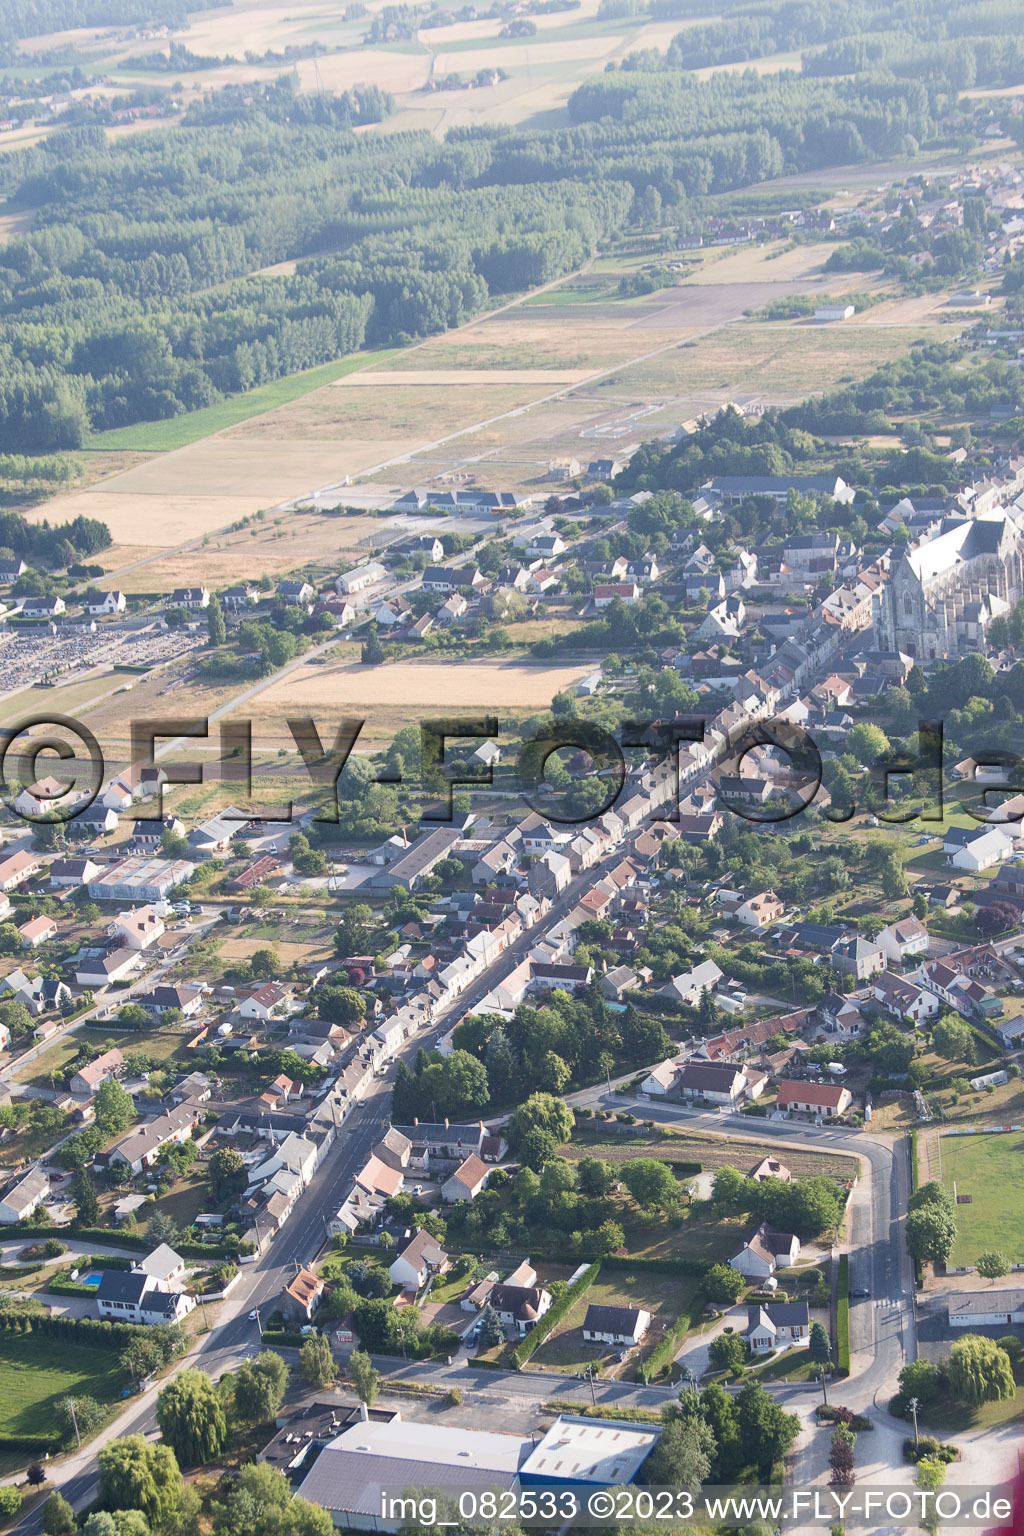 Schrägluftbild von Cléry-Saint-André im Bundesland Loiret, Frankreich